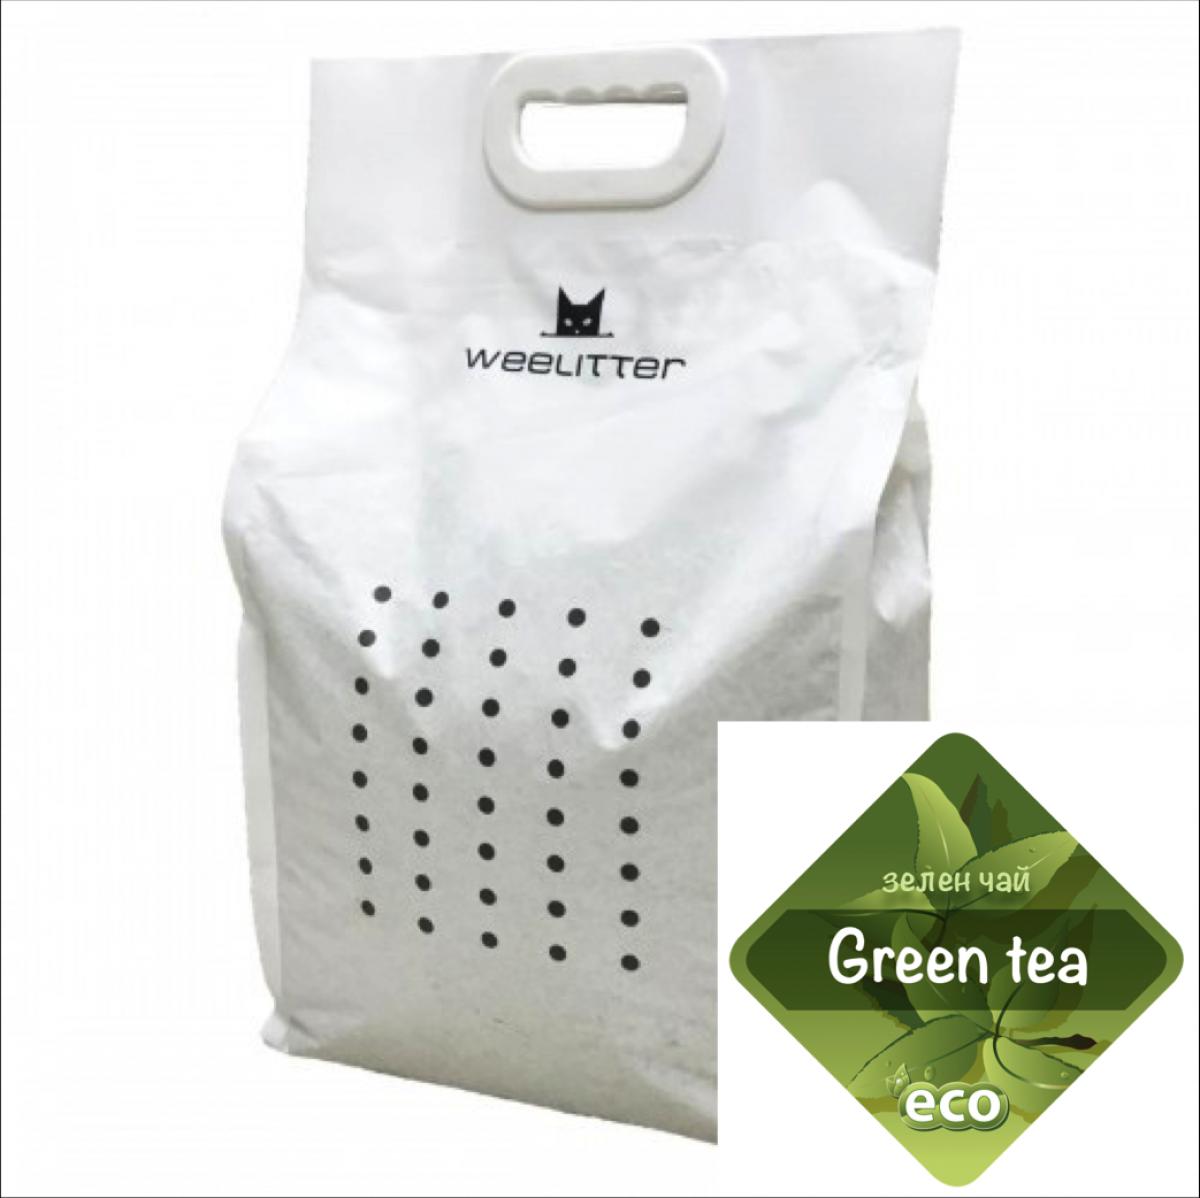 Weelitter Eco Greеn Tea